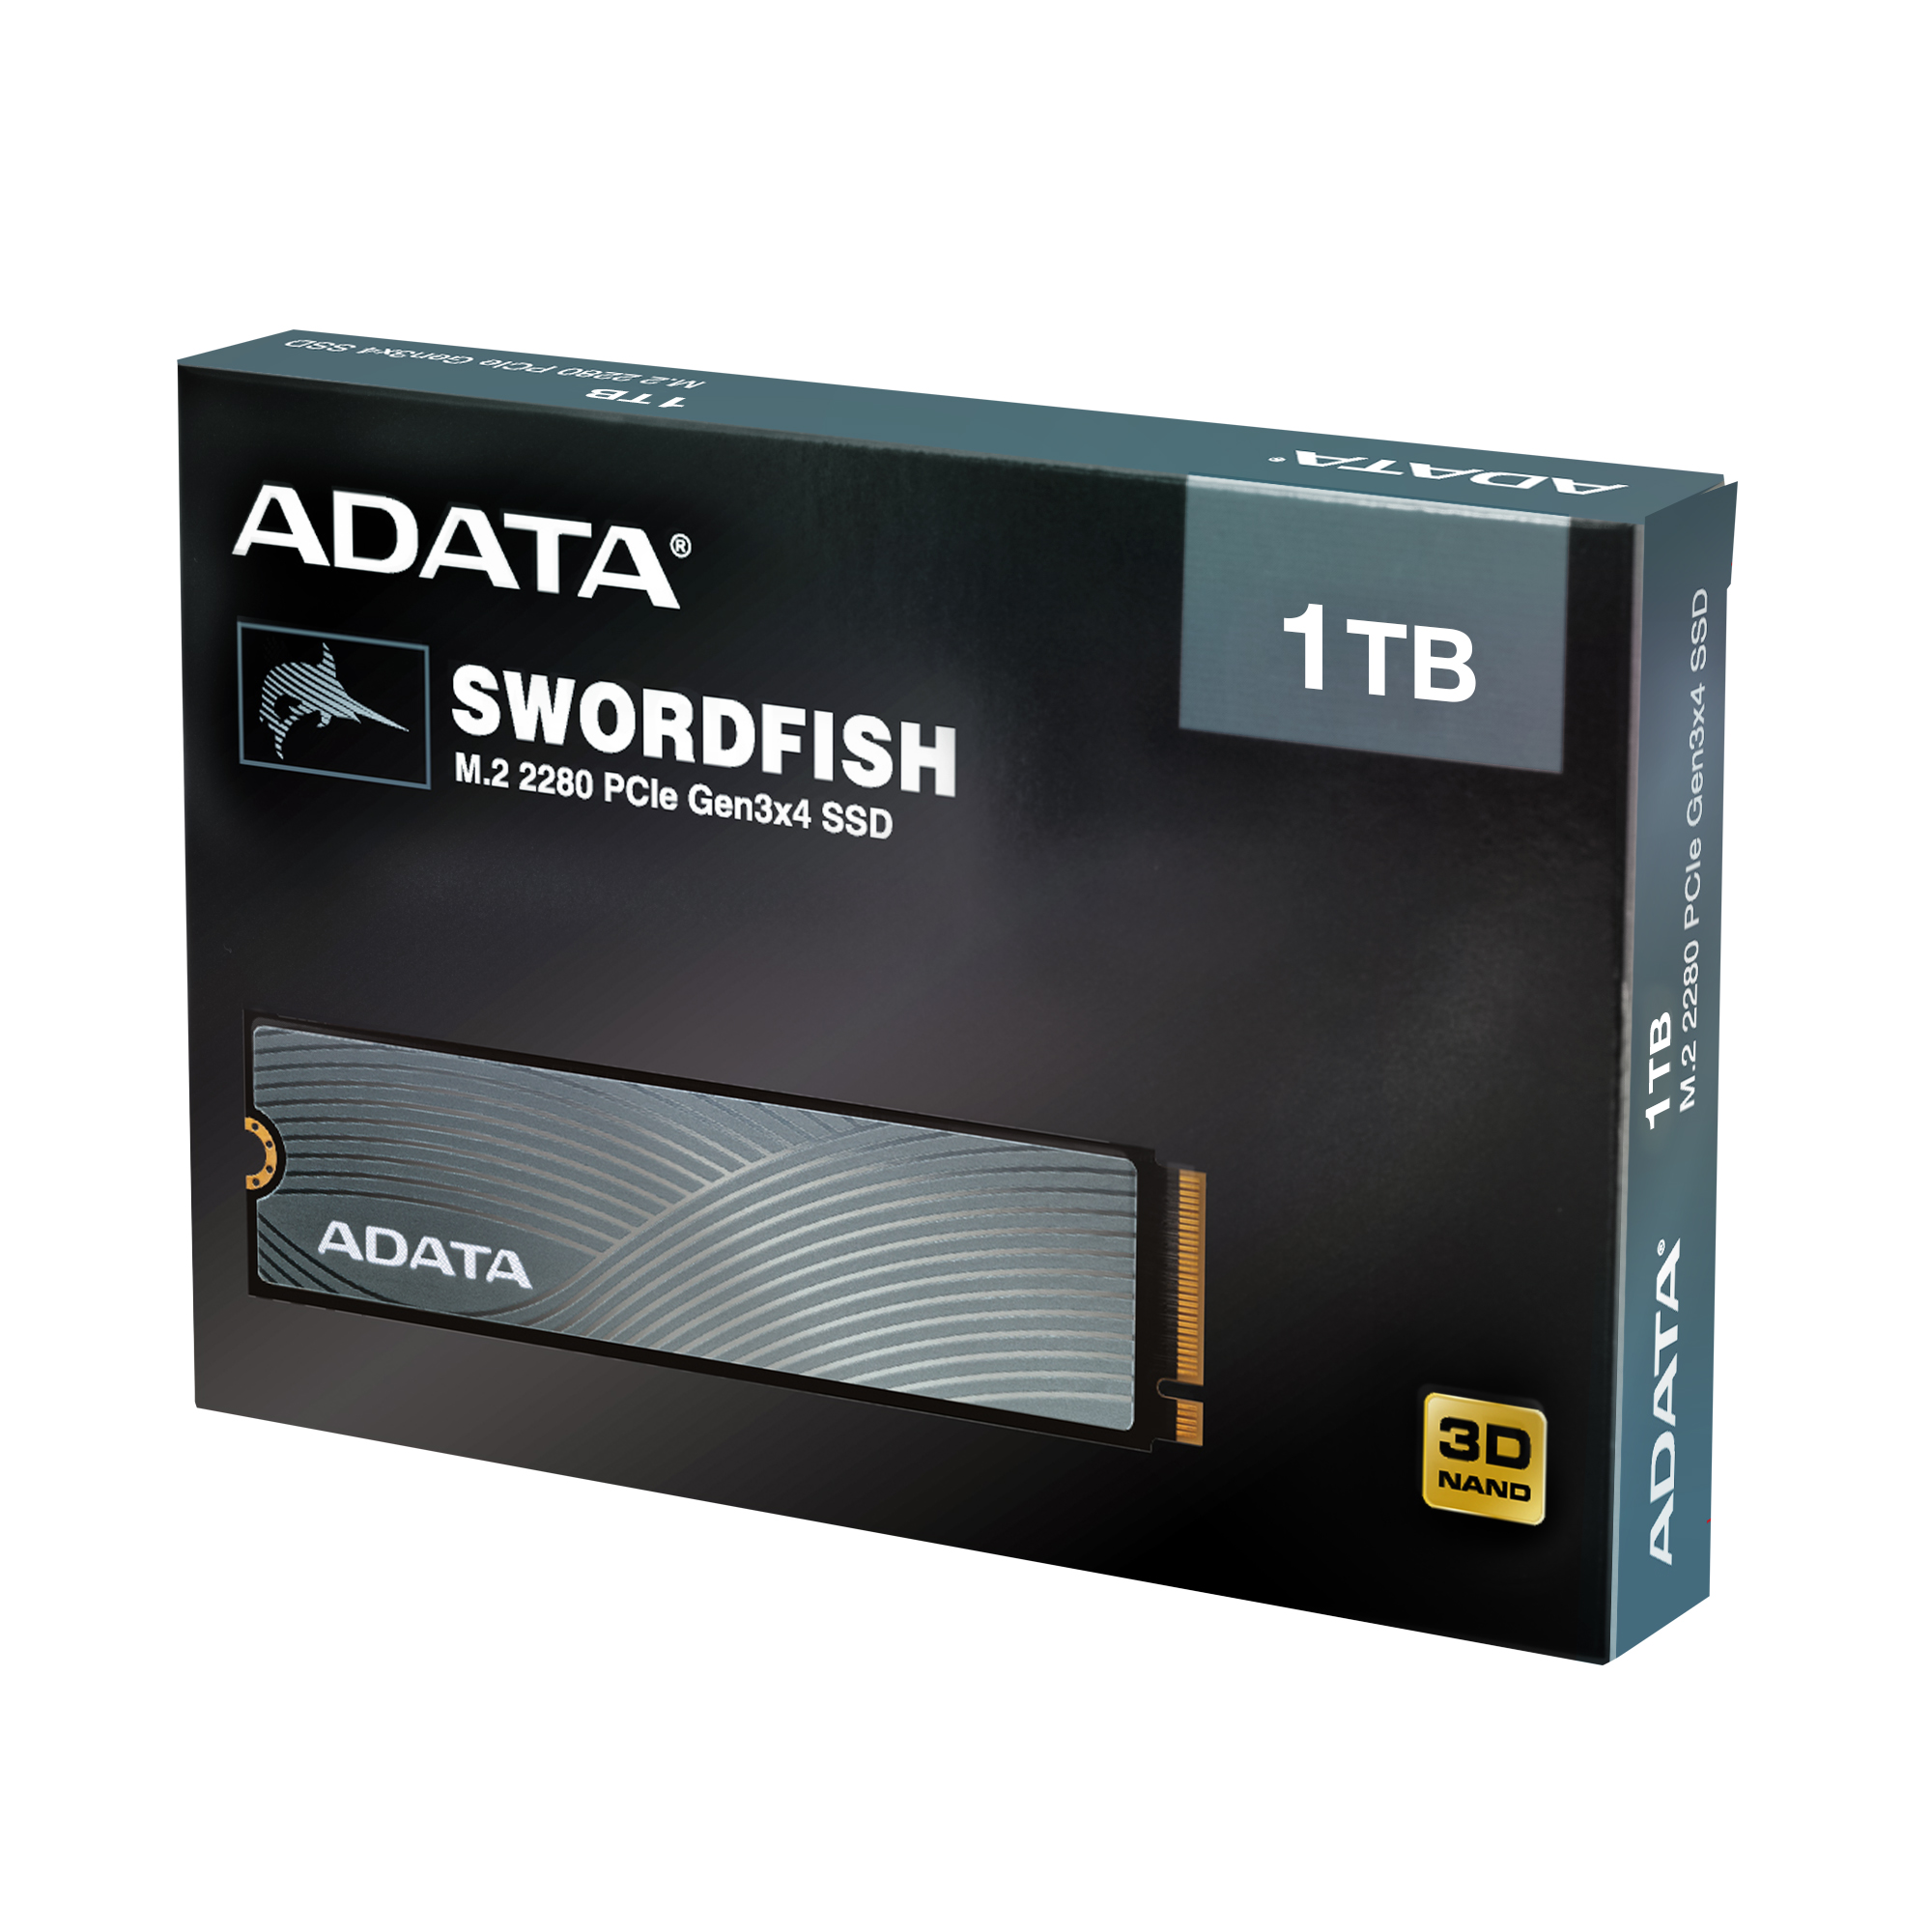 حافظه SSD ای دیتا 1 ترابایت ADATA SWORDFISH M.2 2280 NVMe